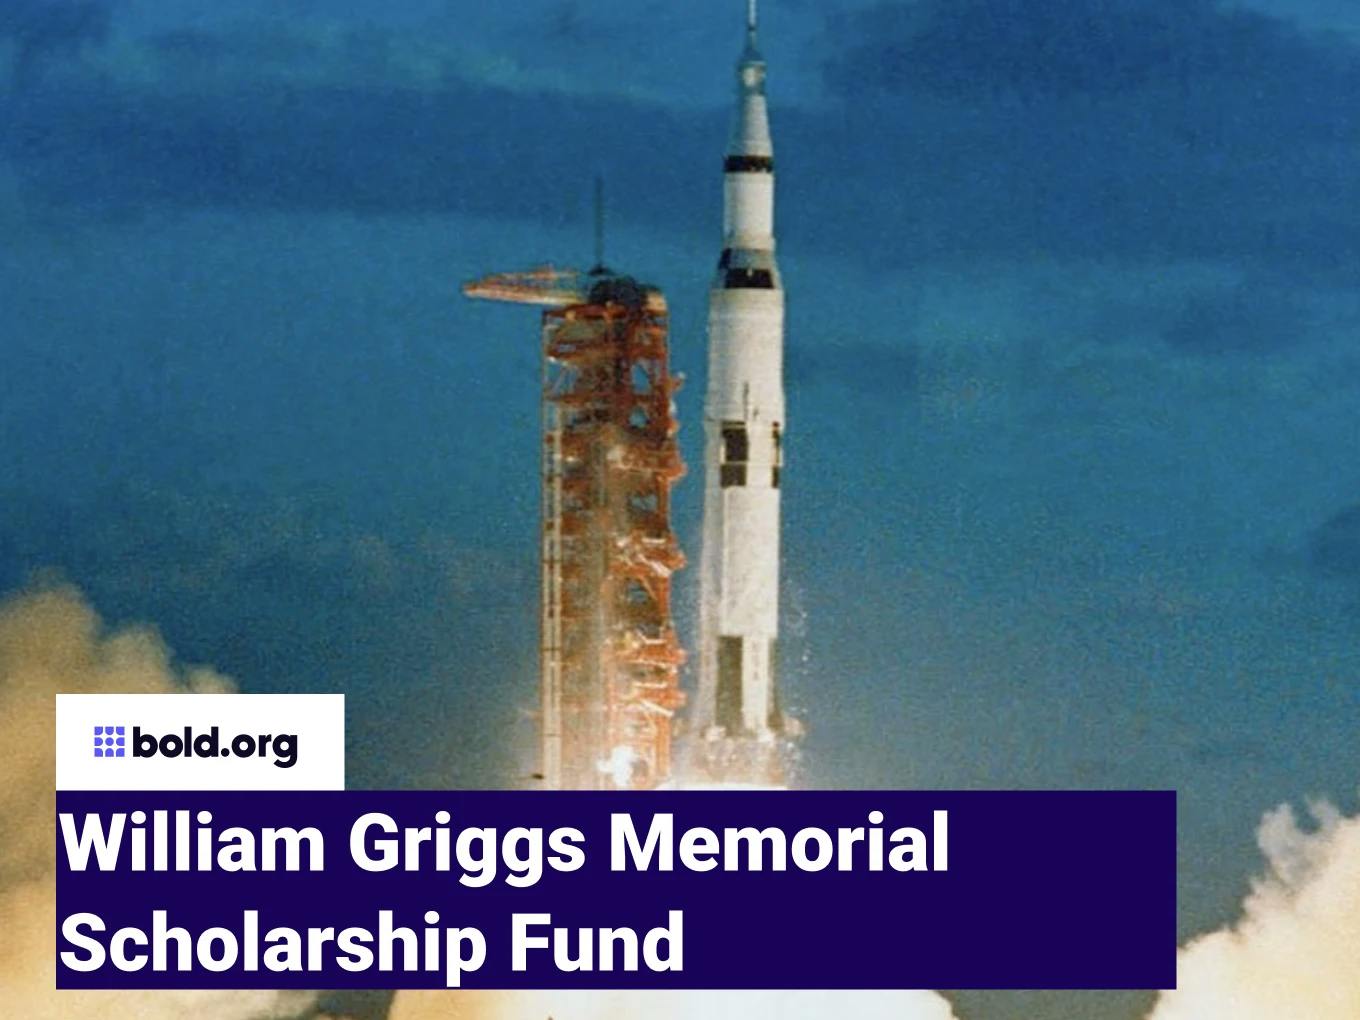 William Griggs Memorial Scholarship Fund